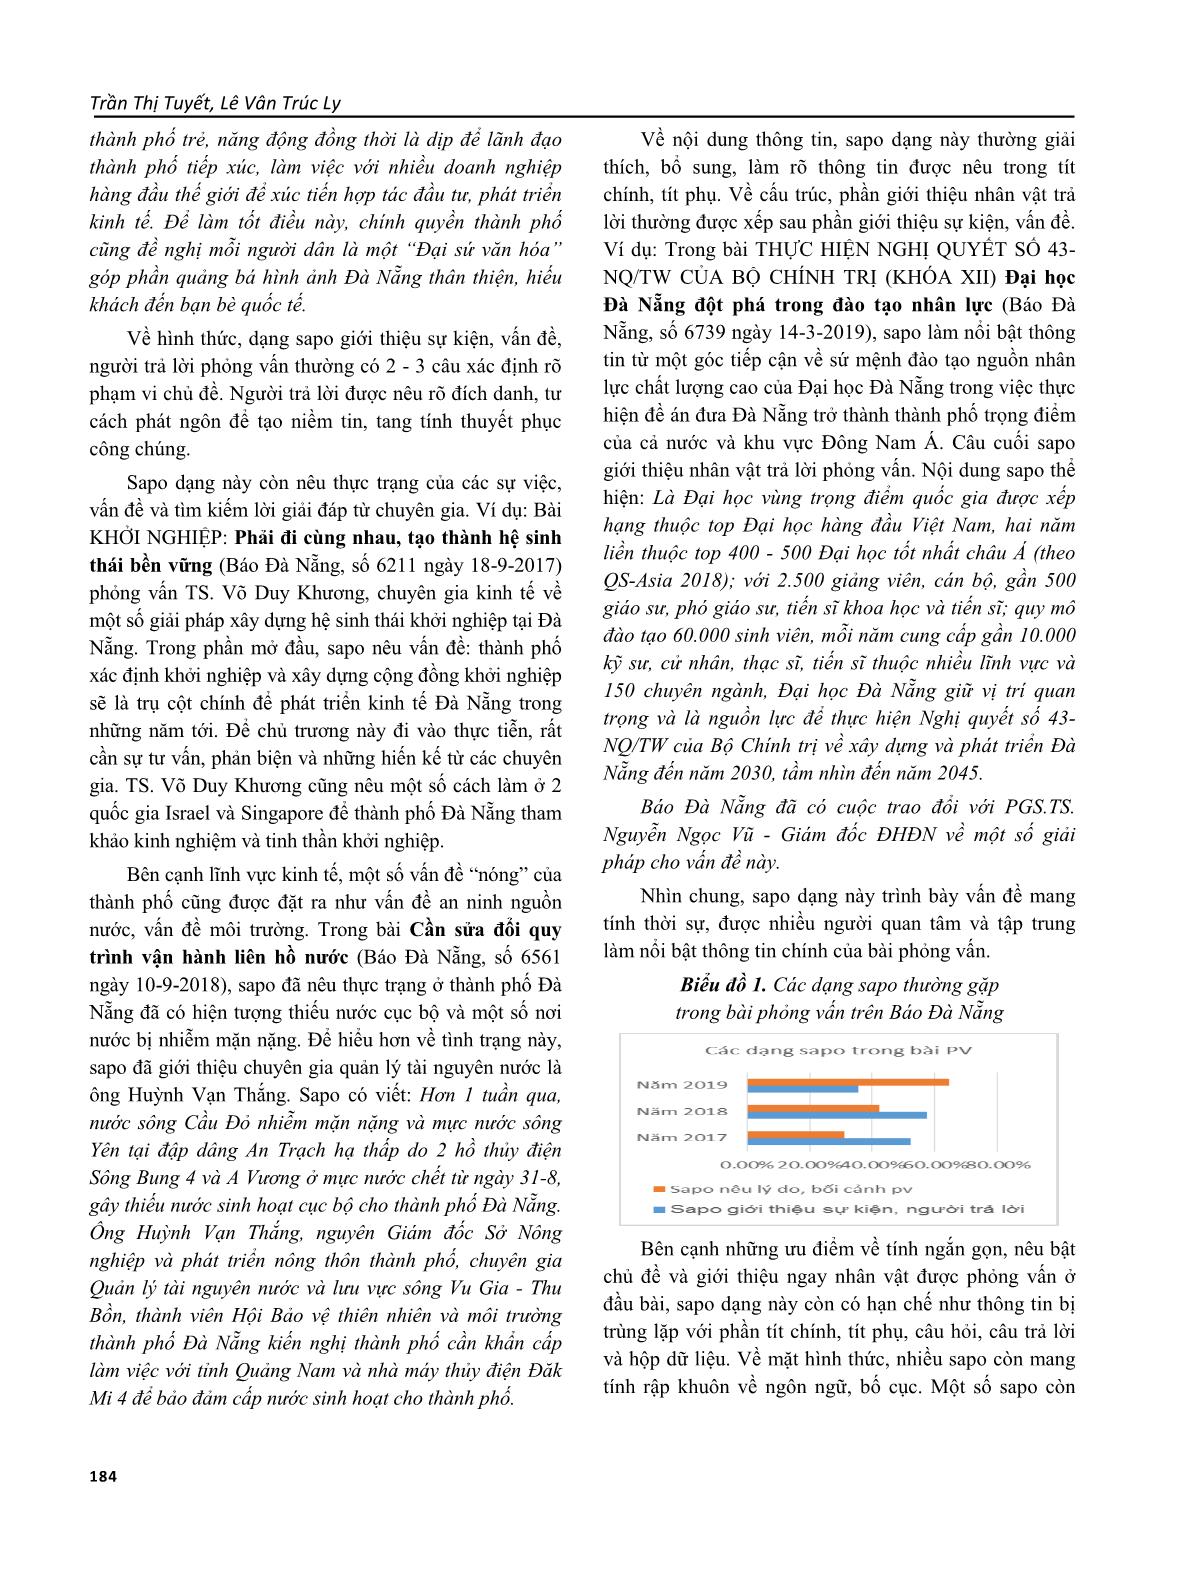 Lời mở đầu (sapo) trong tác phẩm phỏng vấn trên báo Đà Nẵng trang 4